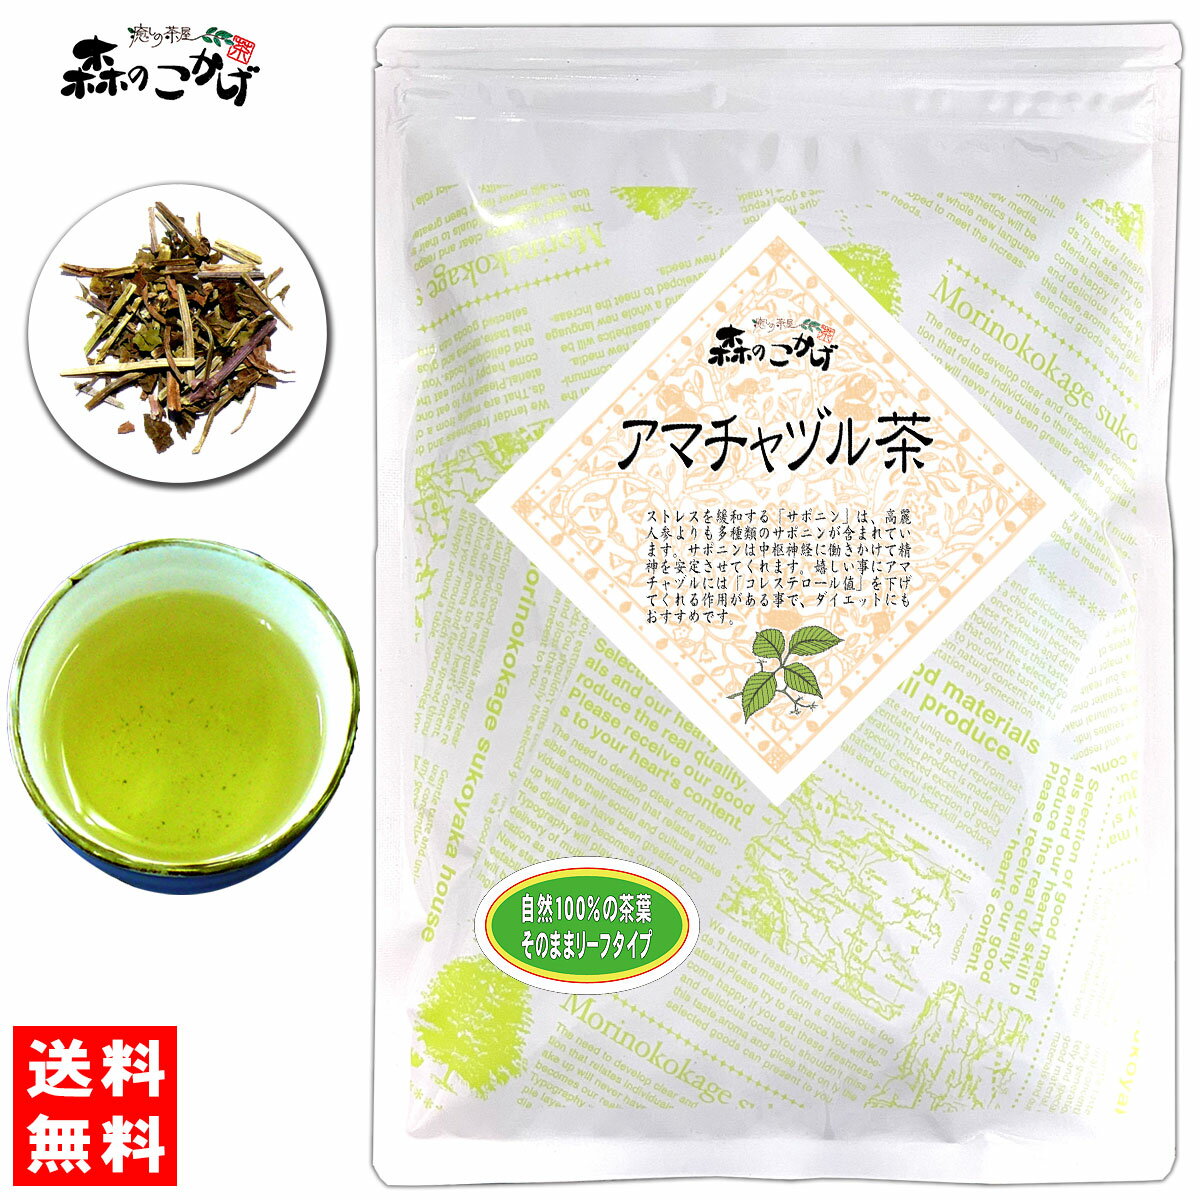 5【送料無料】 アマチャヅル茶 (120g) 茶葉 (アマチャズル) あまちゃずる 健康茶 (残留農薬検査済み) 北海道 沖縄 離島も無料配送可 森のこかげ 健やかハウス 健リフ